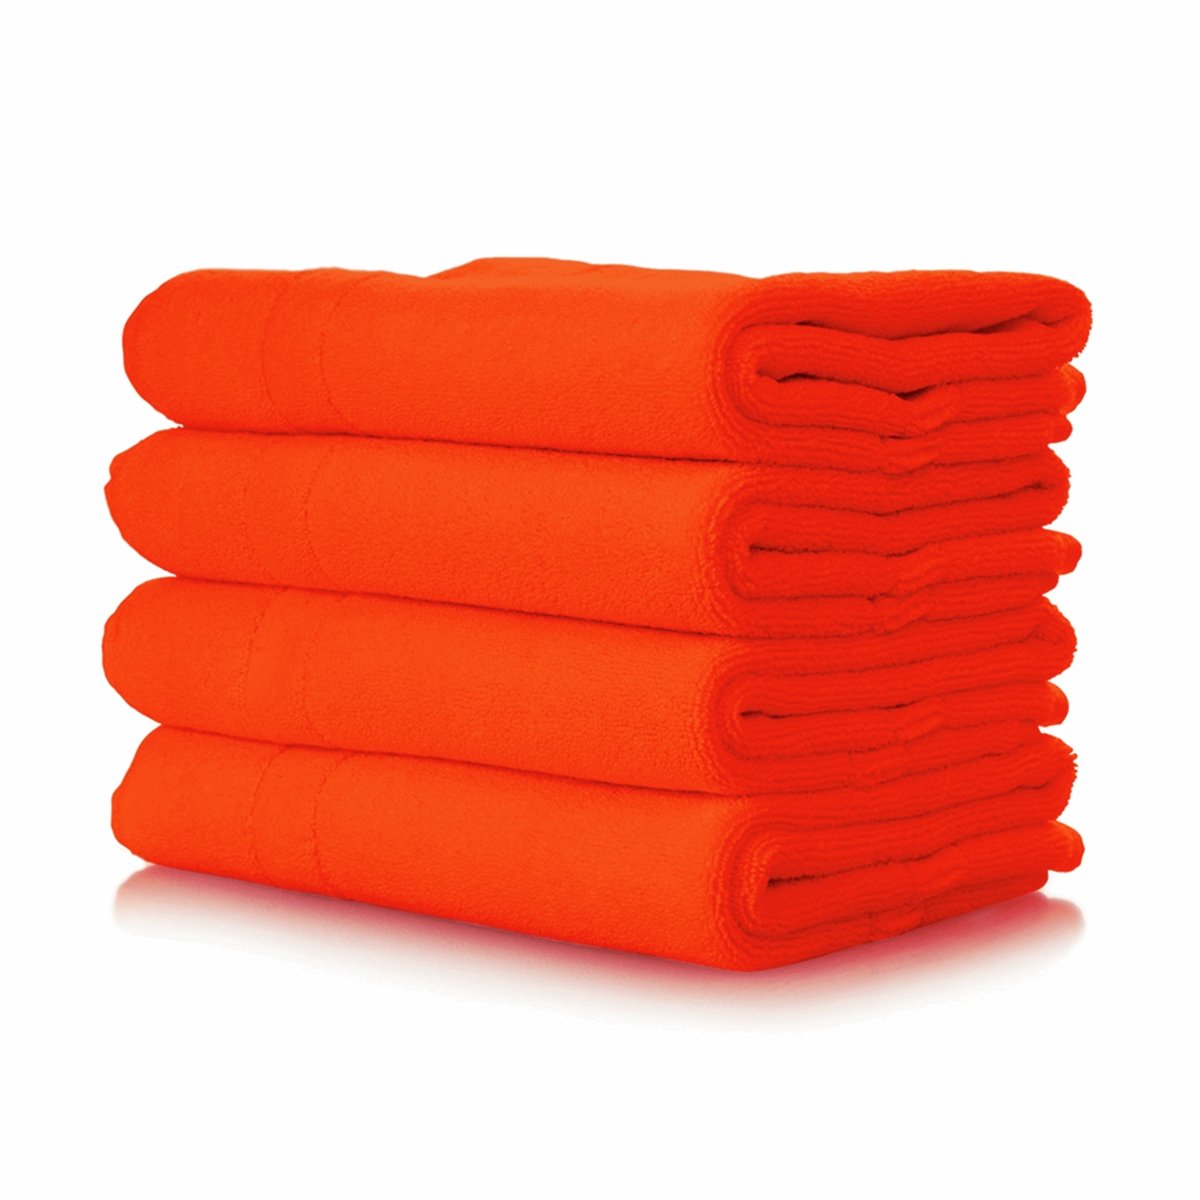 Dylon Machine Fabric Dye Pod 350g- Fresh Orange 55 - Pound A Metre